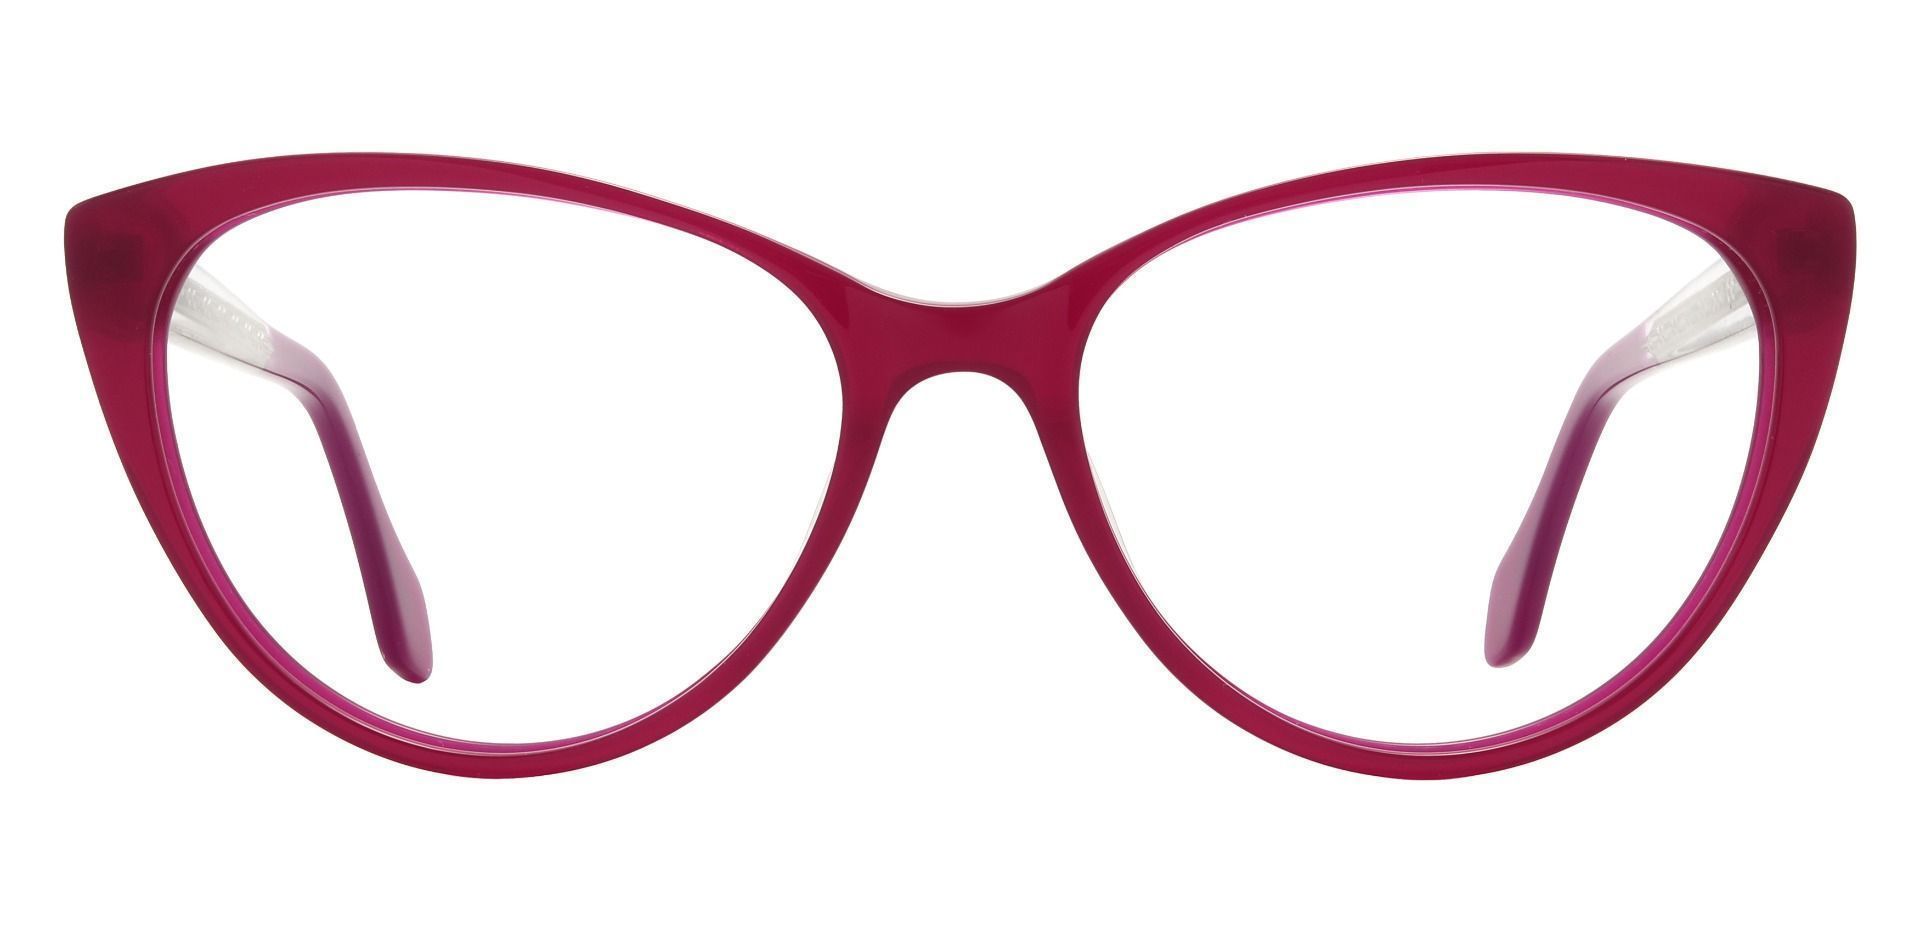 Laramie Cat Eye Prescription Glasses - Red